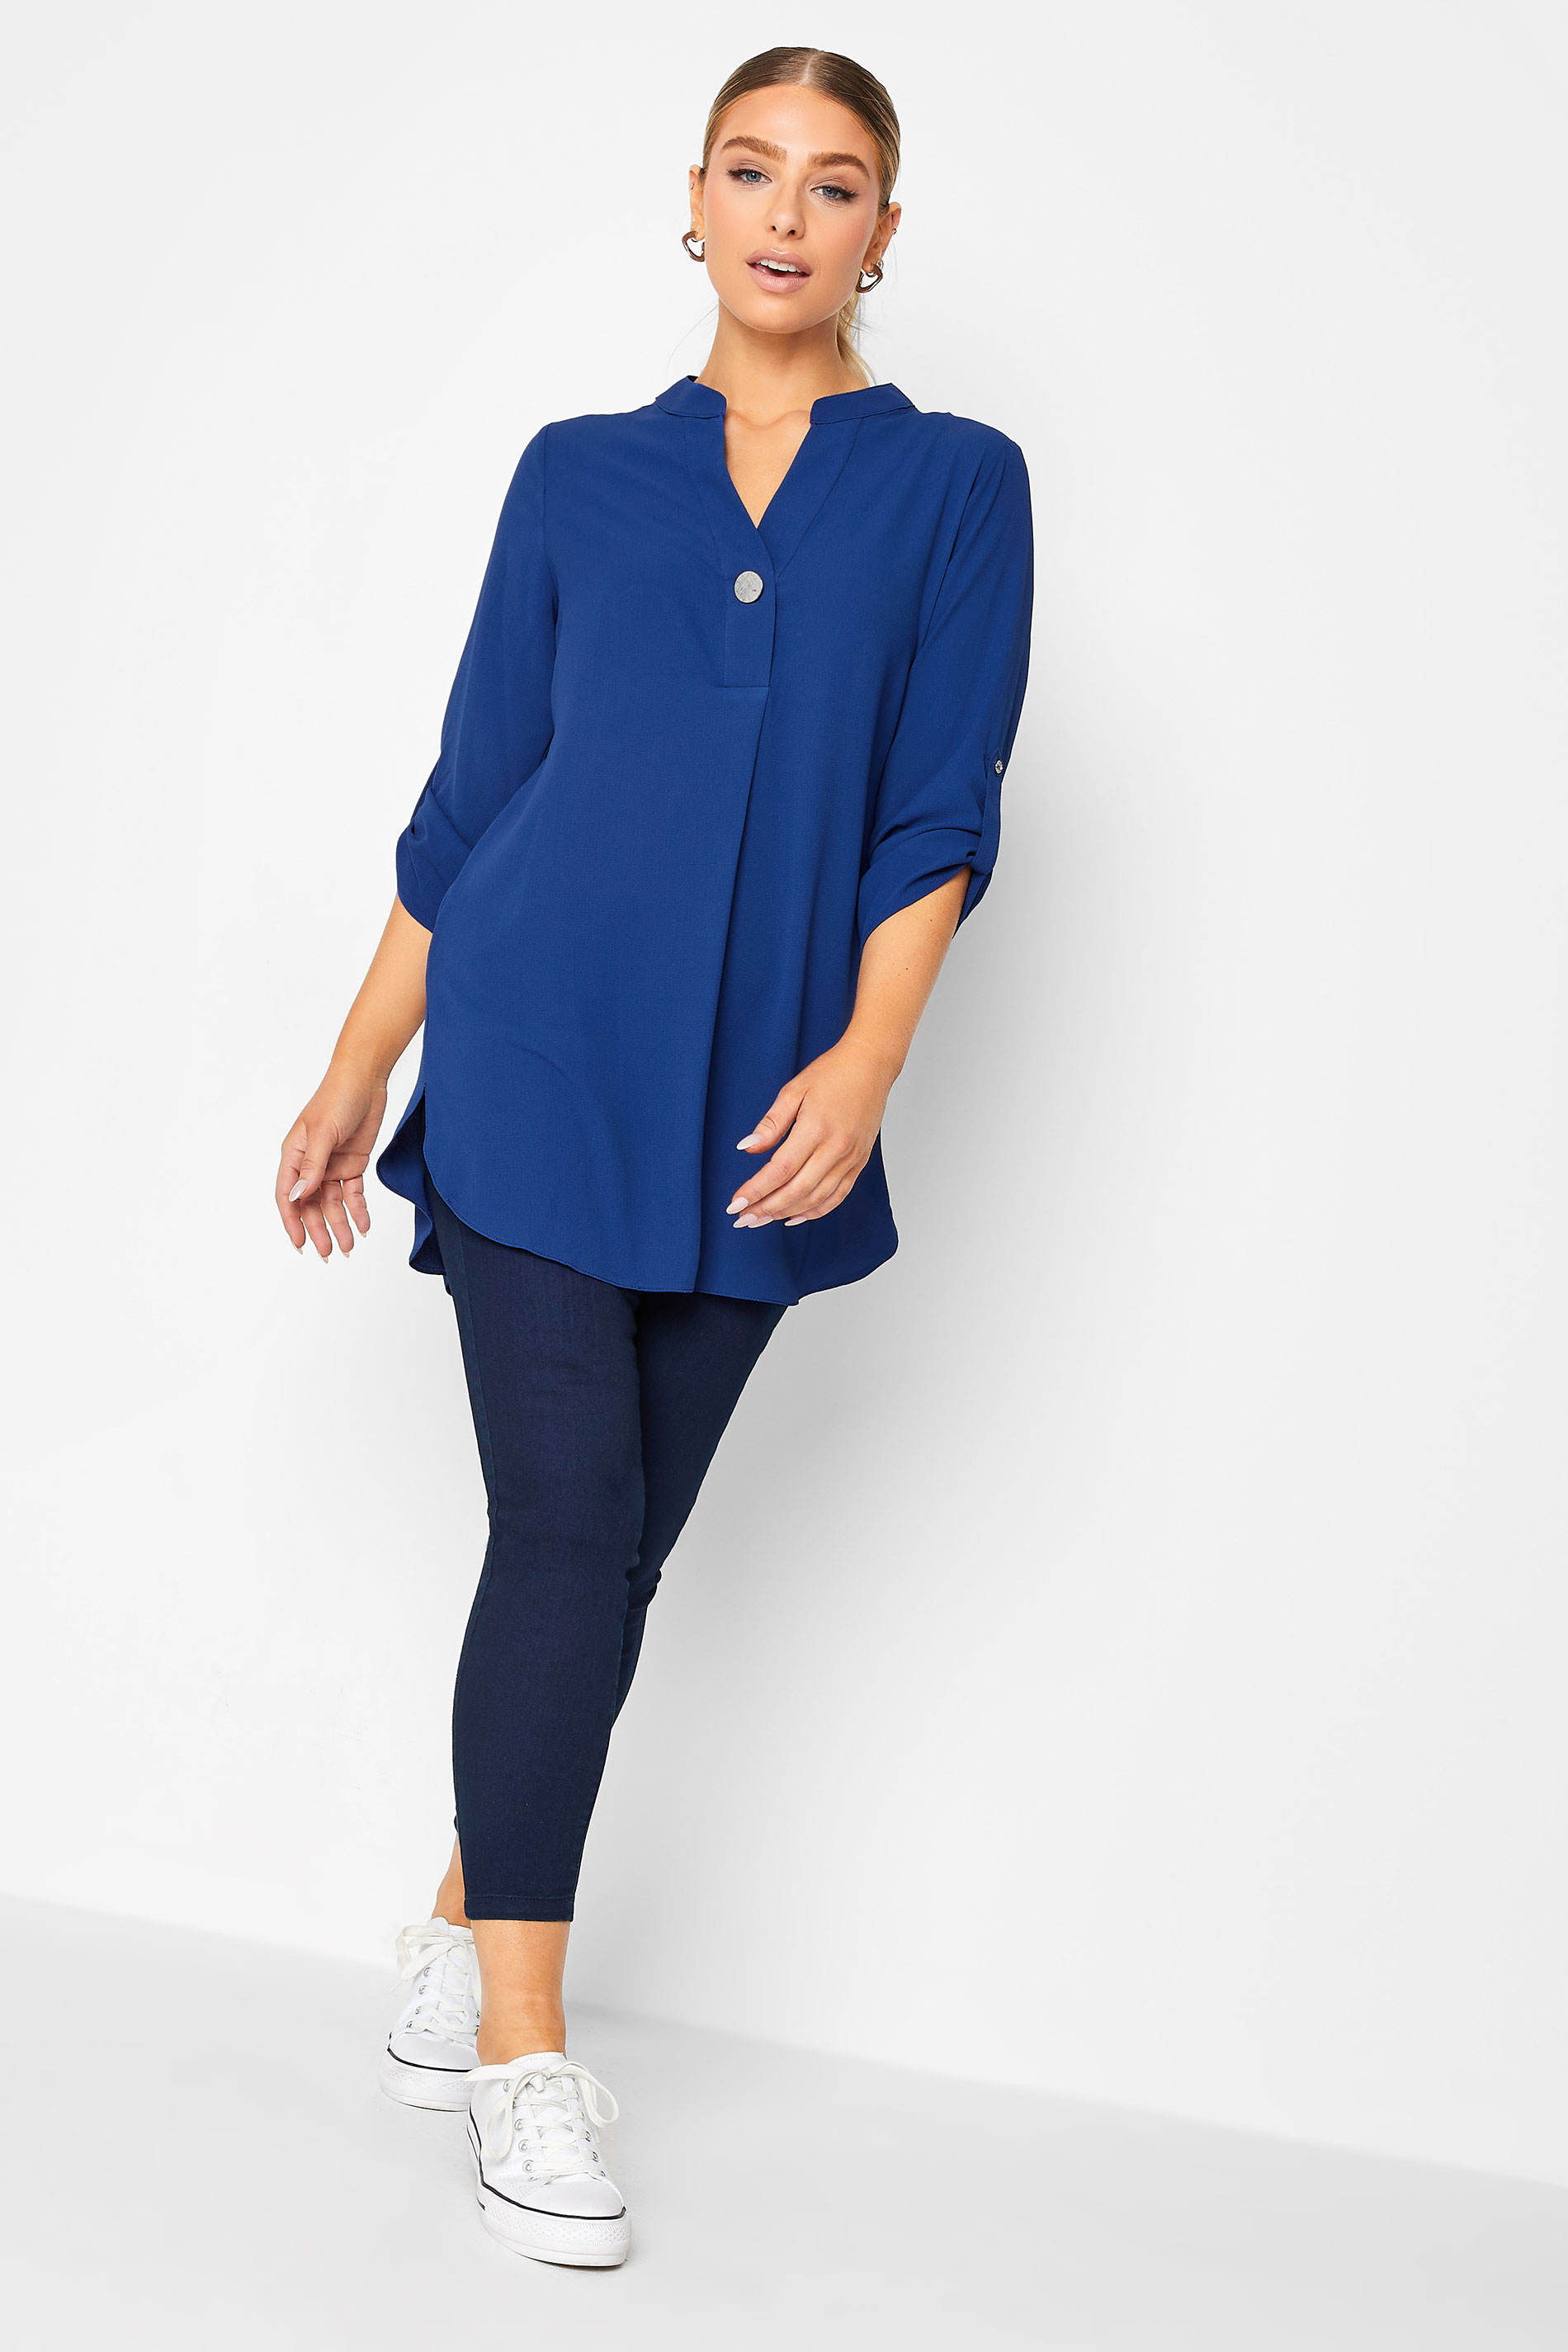 M&Co Cobalt Blue Long Sleeve Button Blouse | M&Co 2